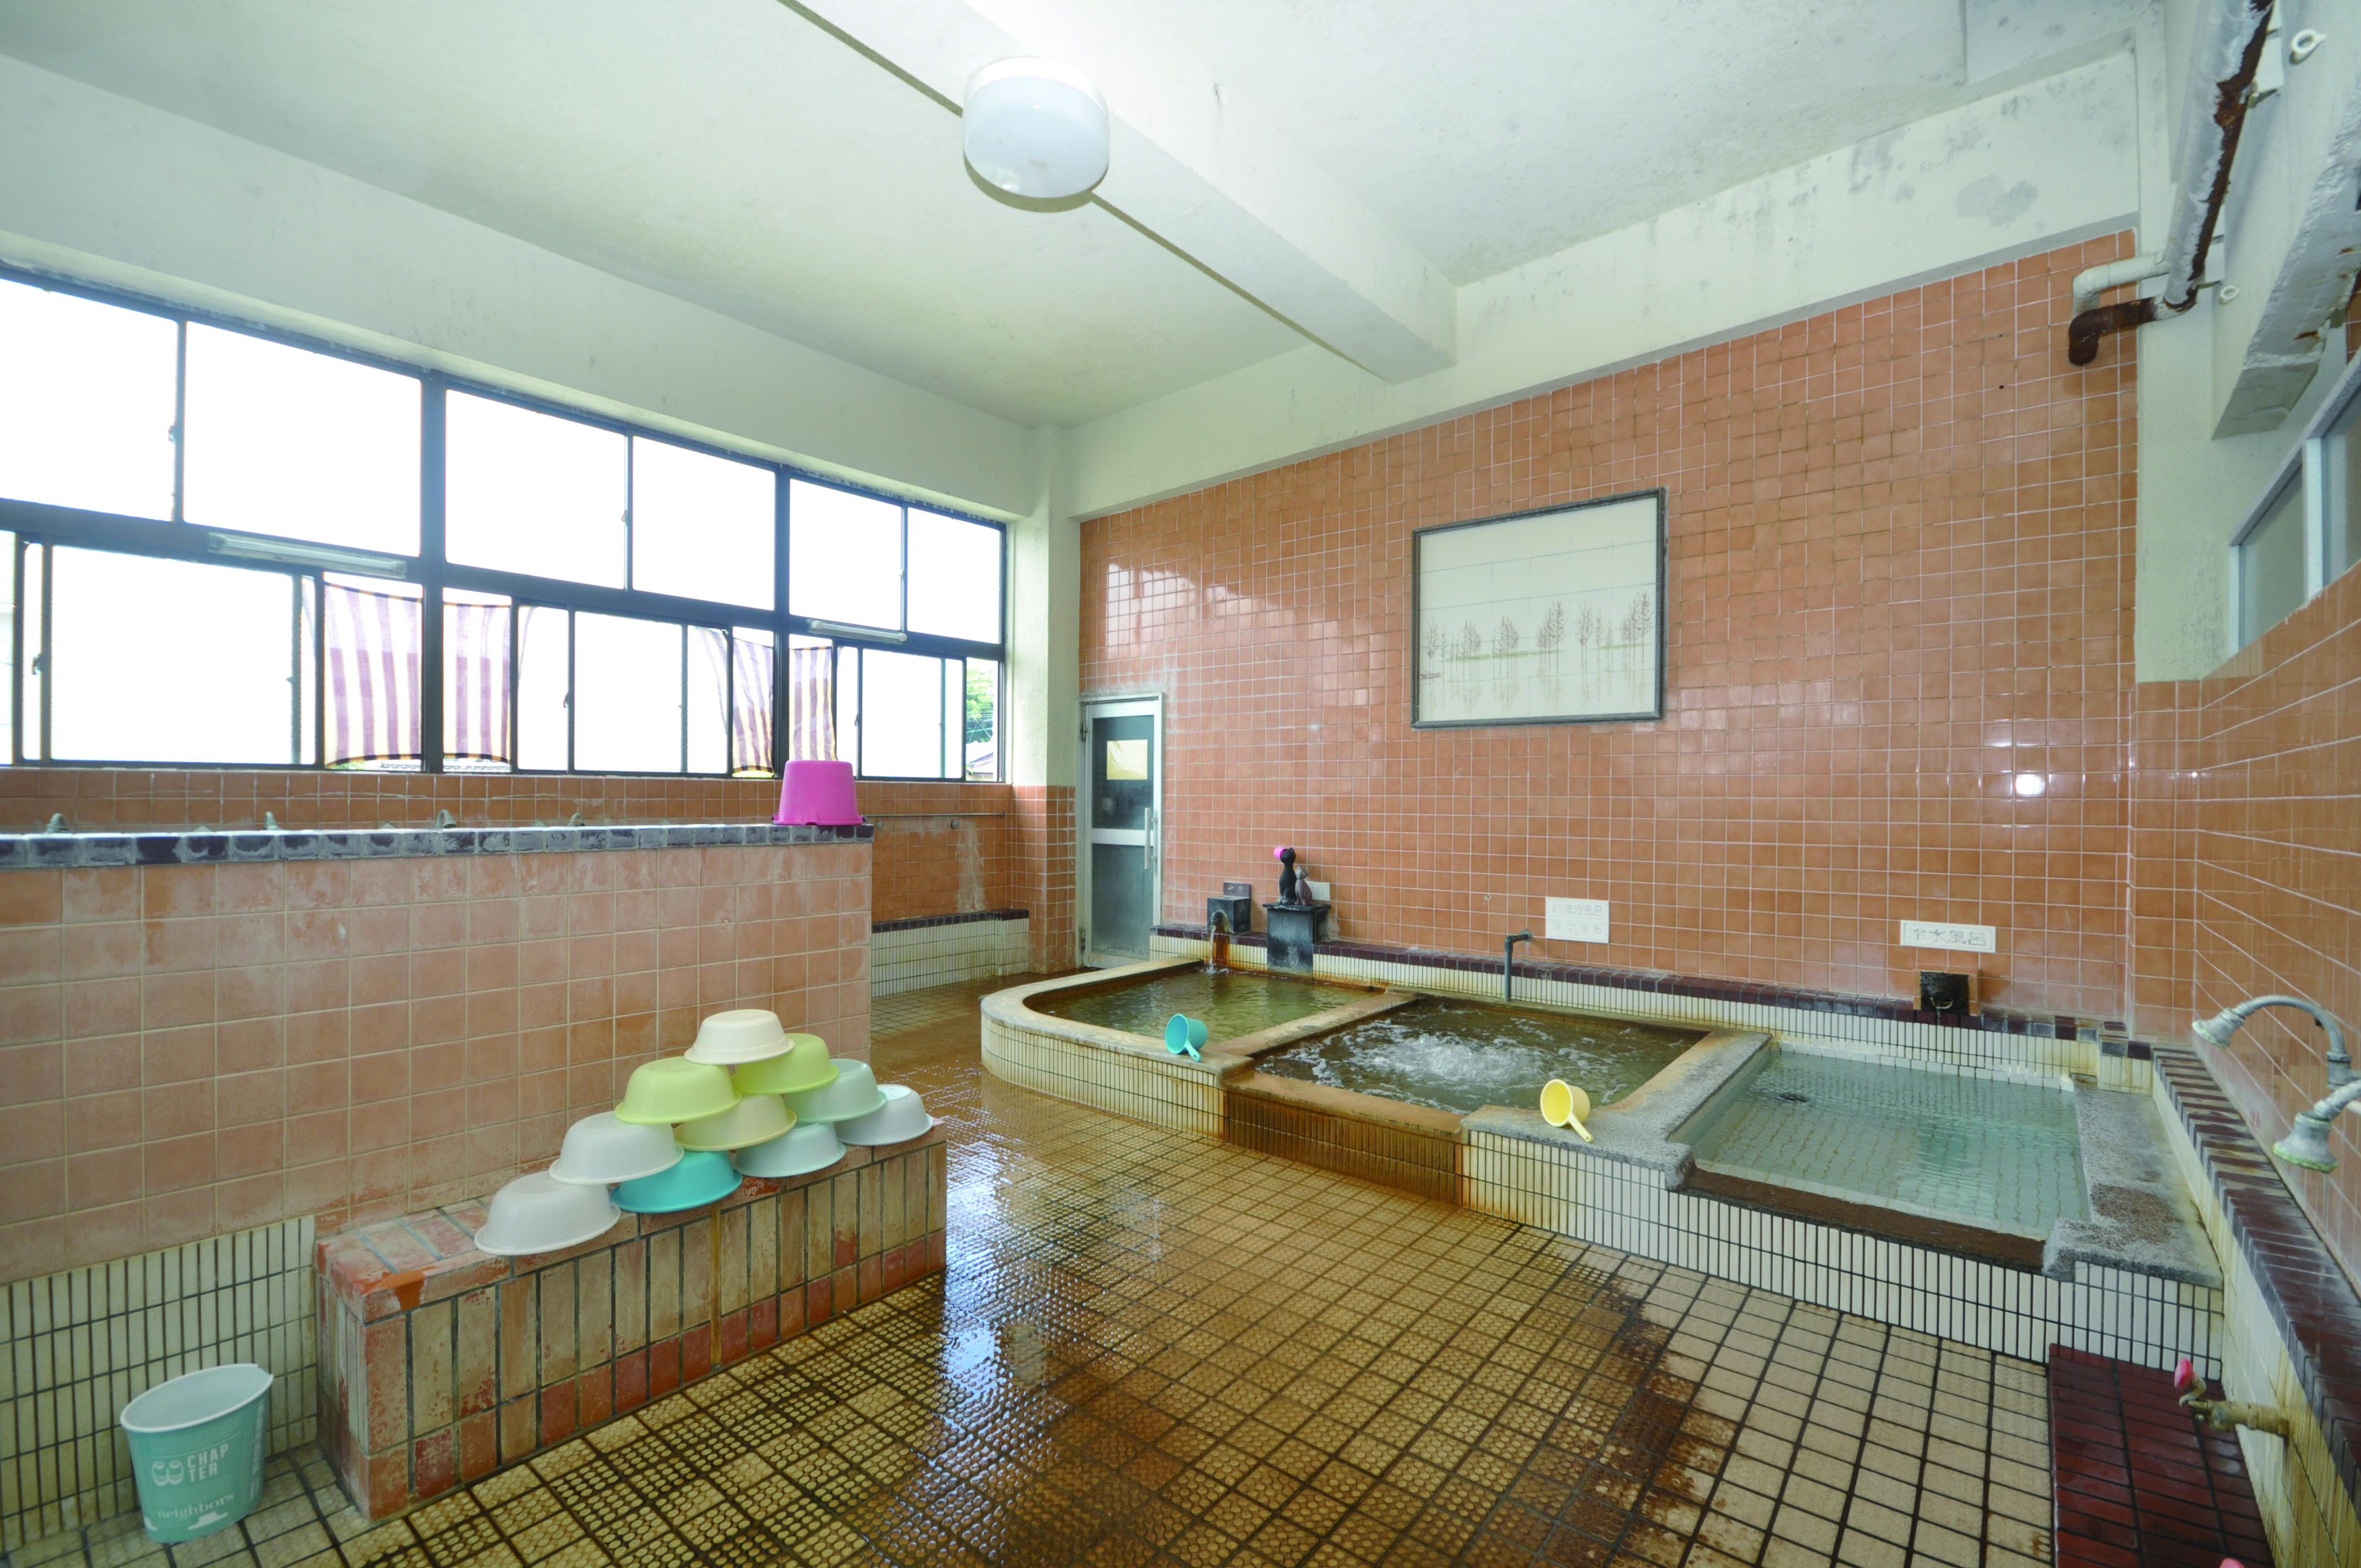 【坂元温泉】泉質が評判の歴史ある公衆浴場が目指すのは、地域の人々の集いの場